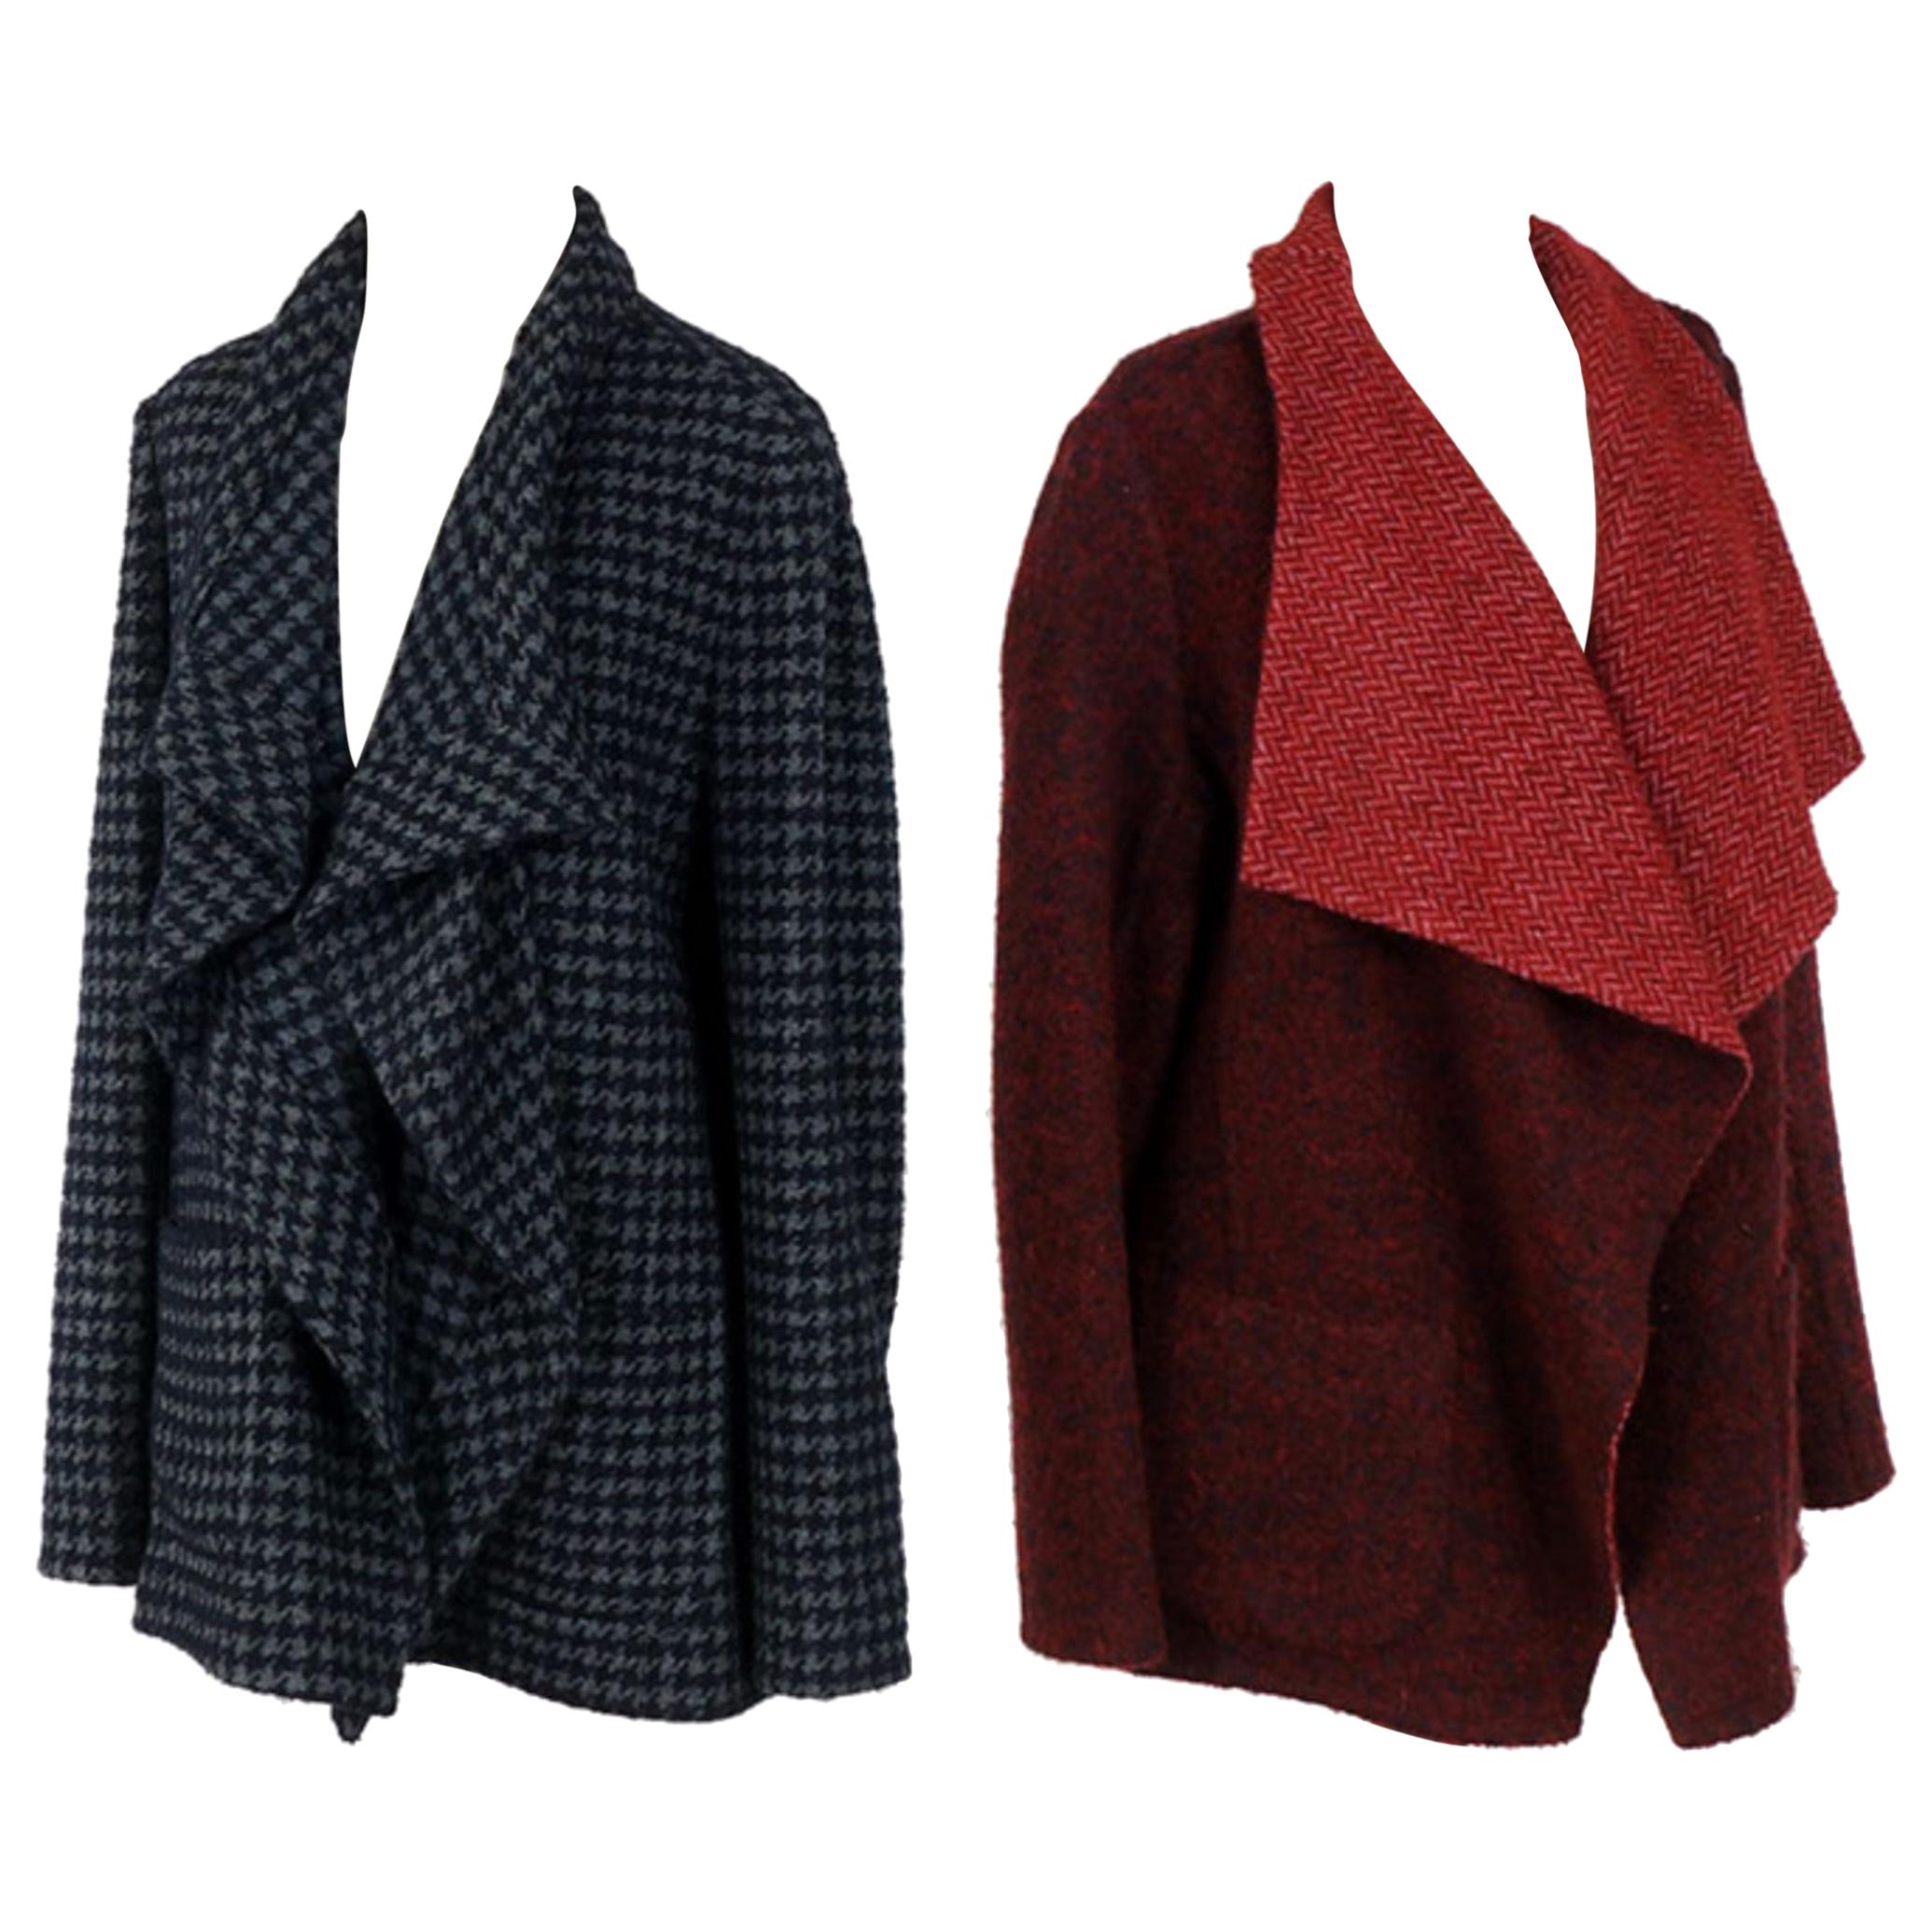 Deux vestes de créateur en laine et cachemire bleu pied-de-poule, veste réversible rouge foncé.